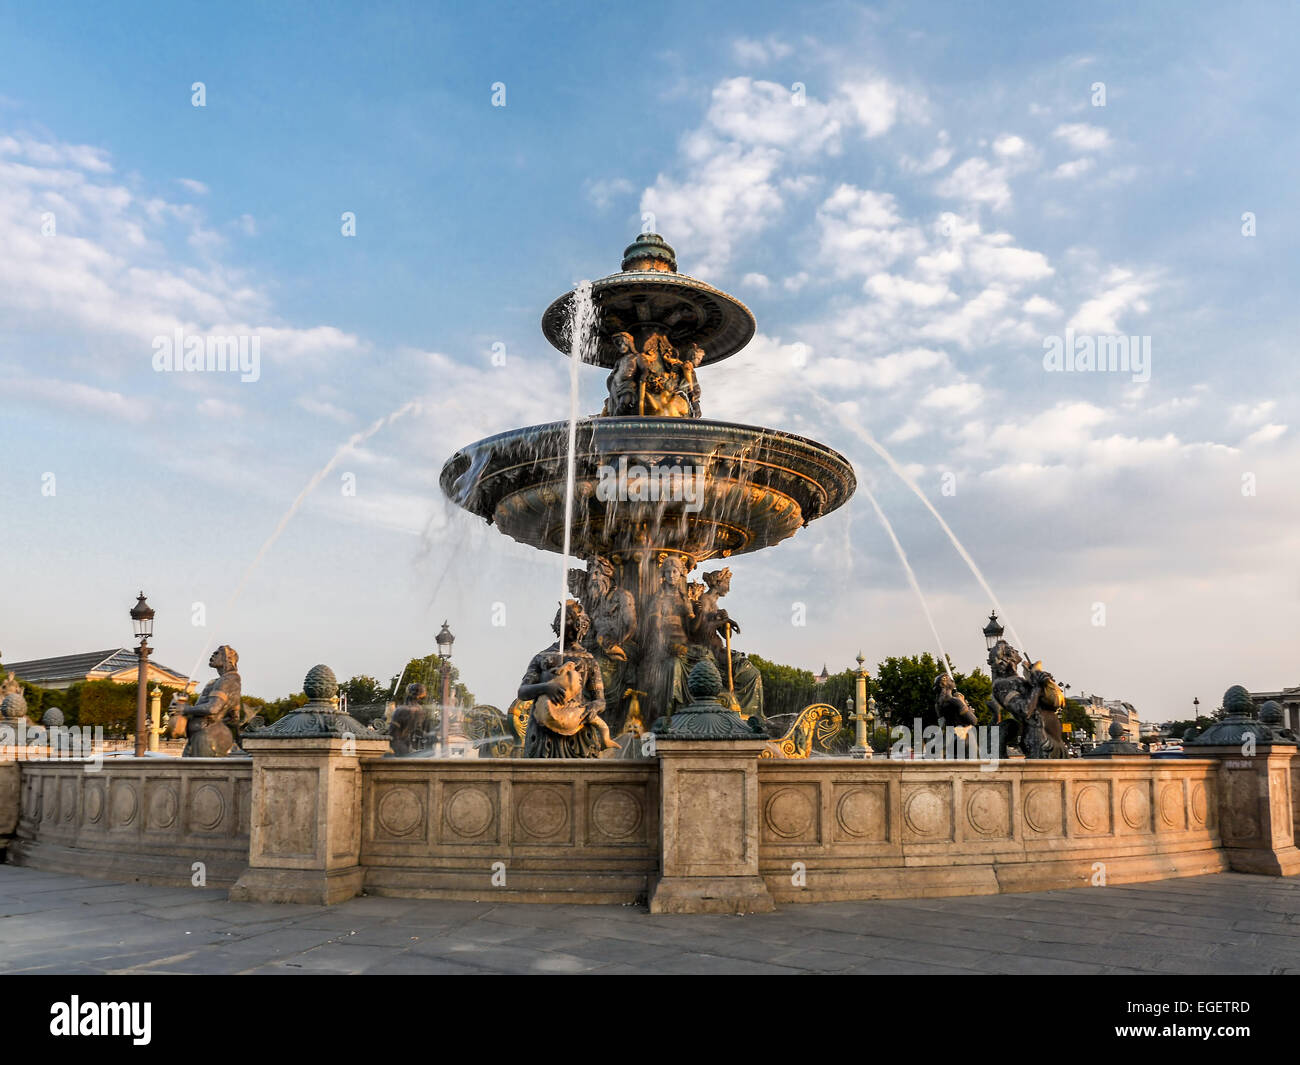 Fountain on Place de la Concorde, Paris, France Stock Photo